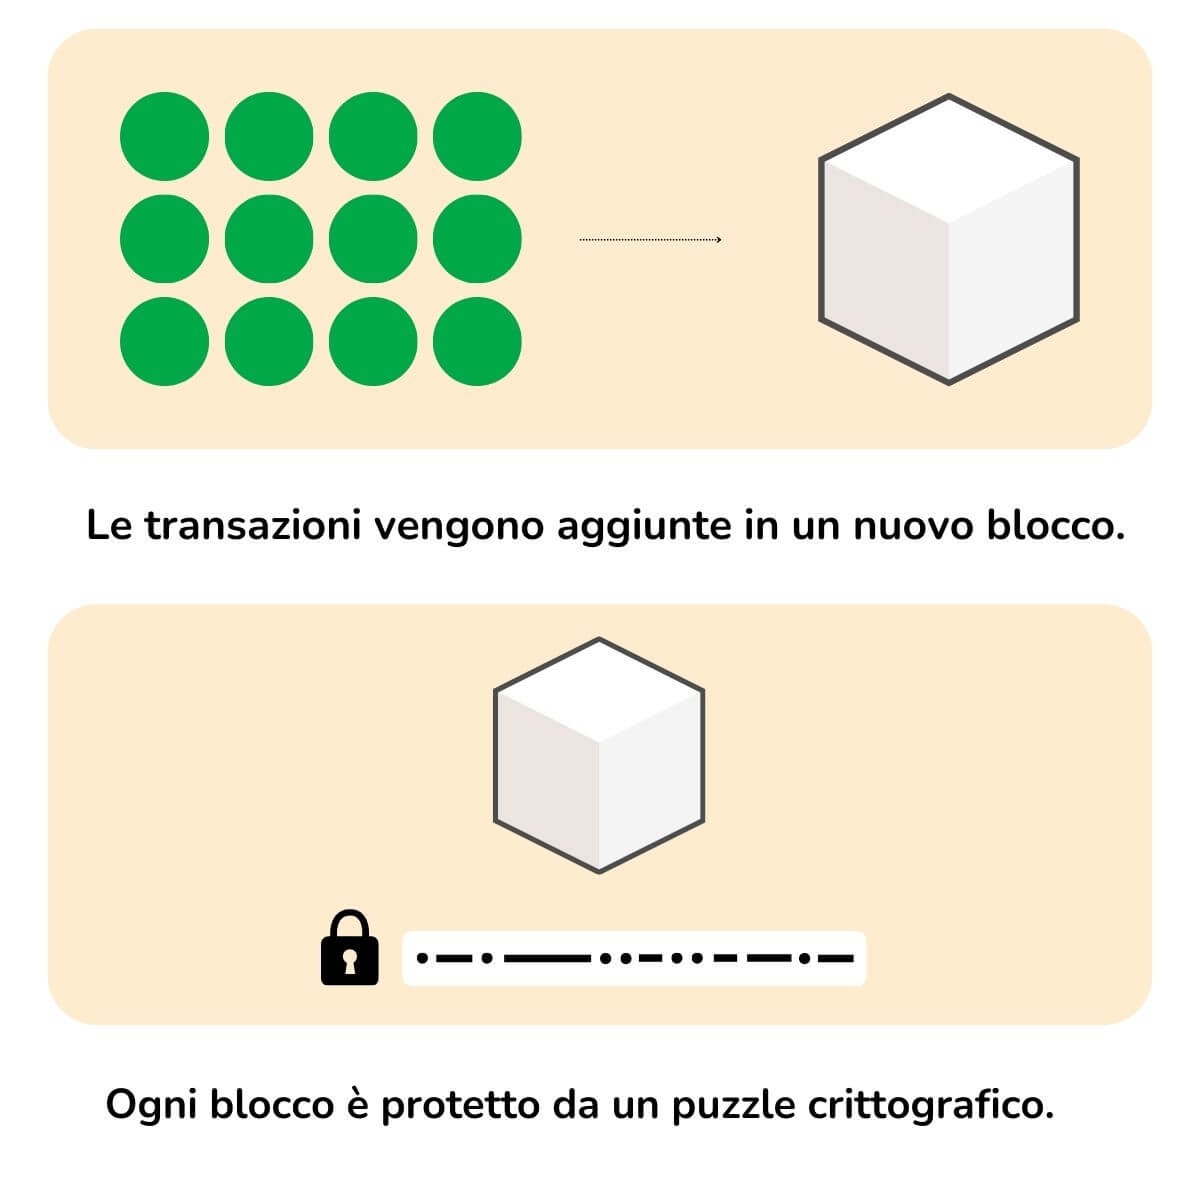 L'infografica spiega il processo di aggiunta di una transazione a un nuovo blocco.